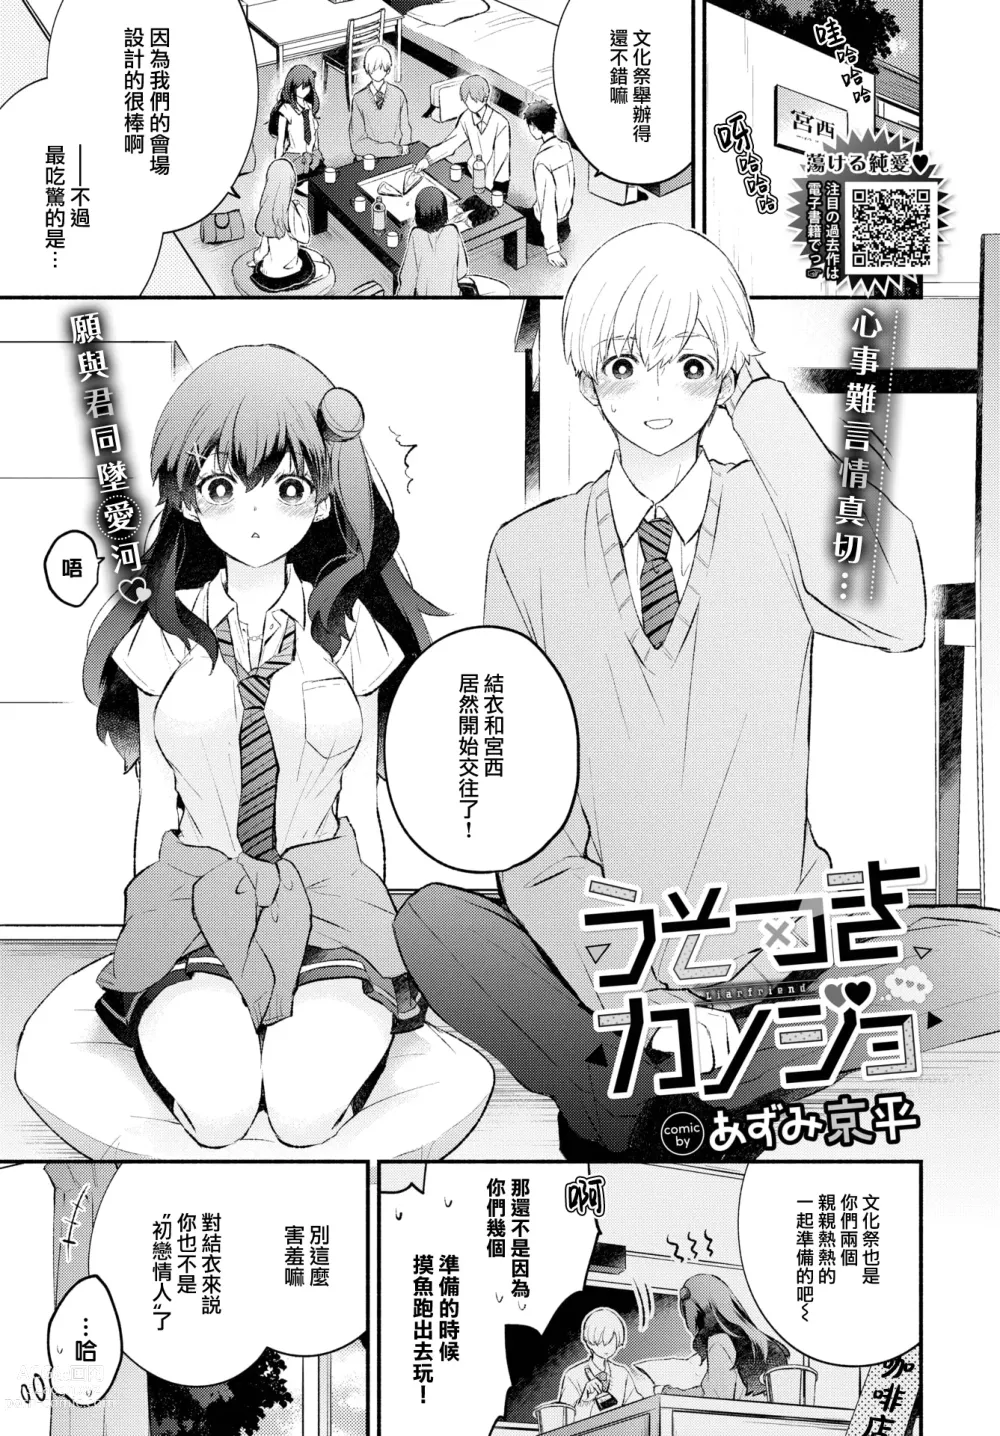 Page 2 of manga Usotsuki Kanojo